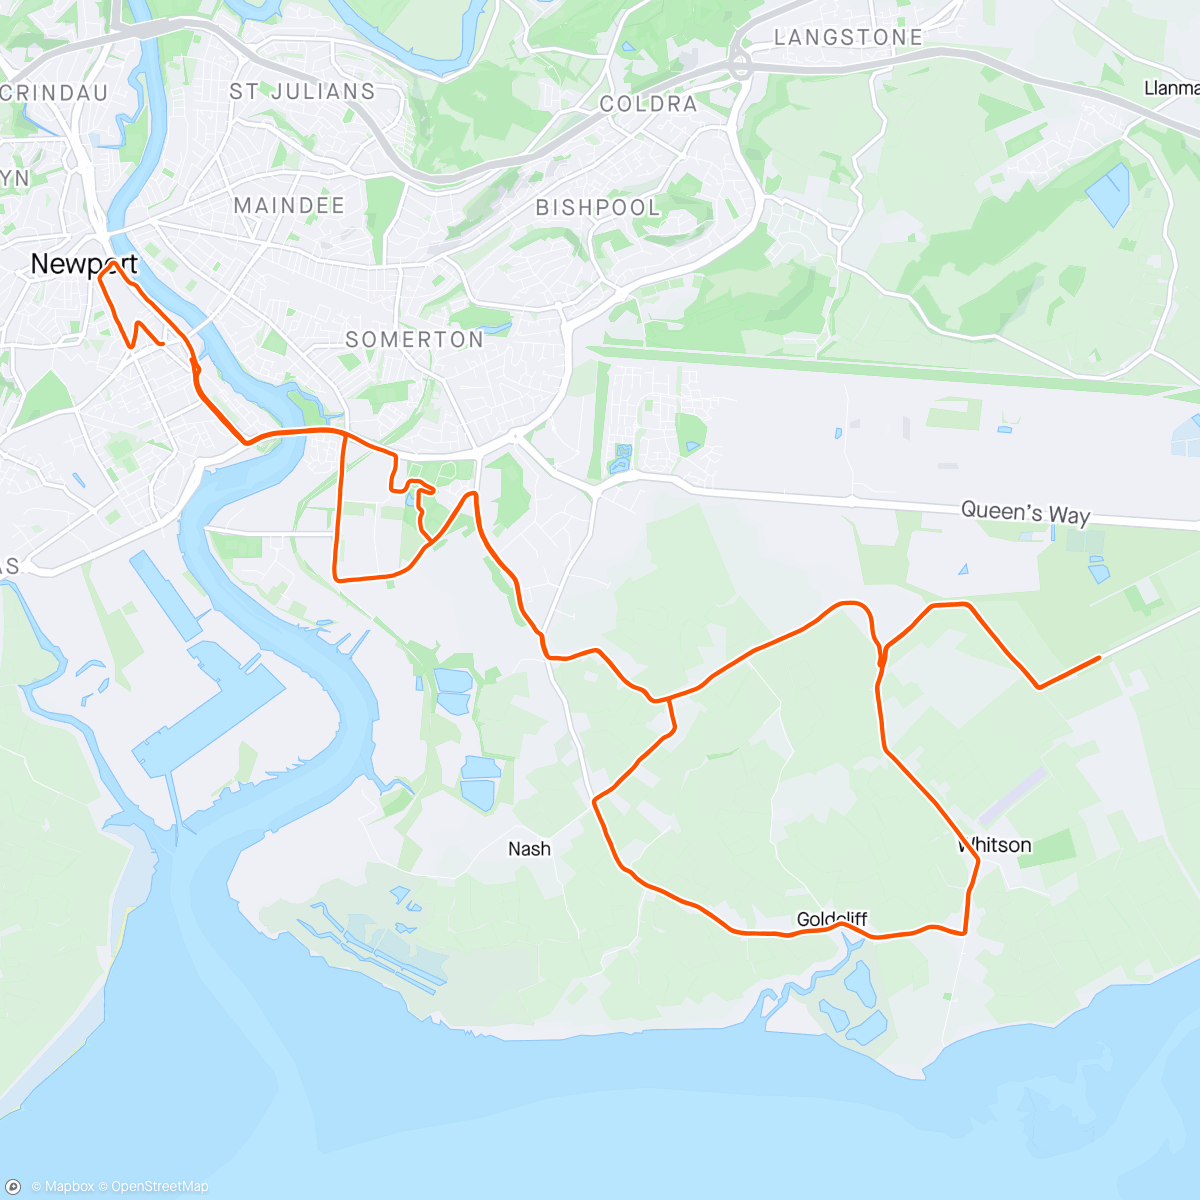 「Newport Marathon - 3.01.51」活動的地圖